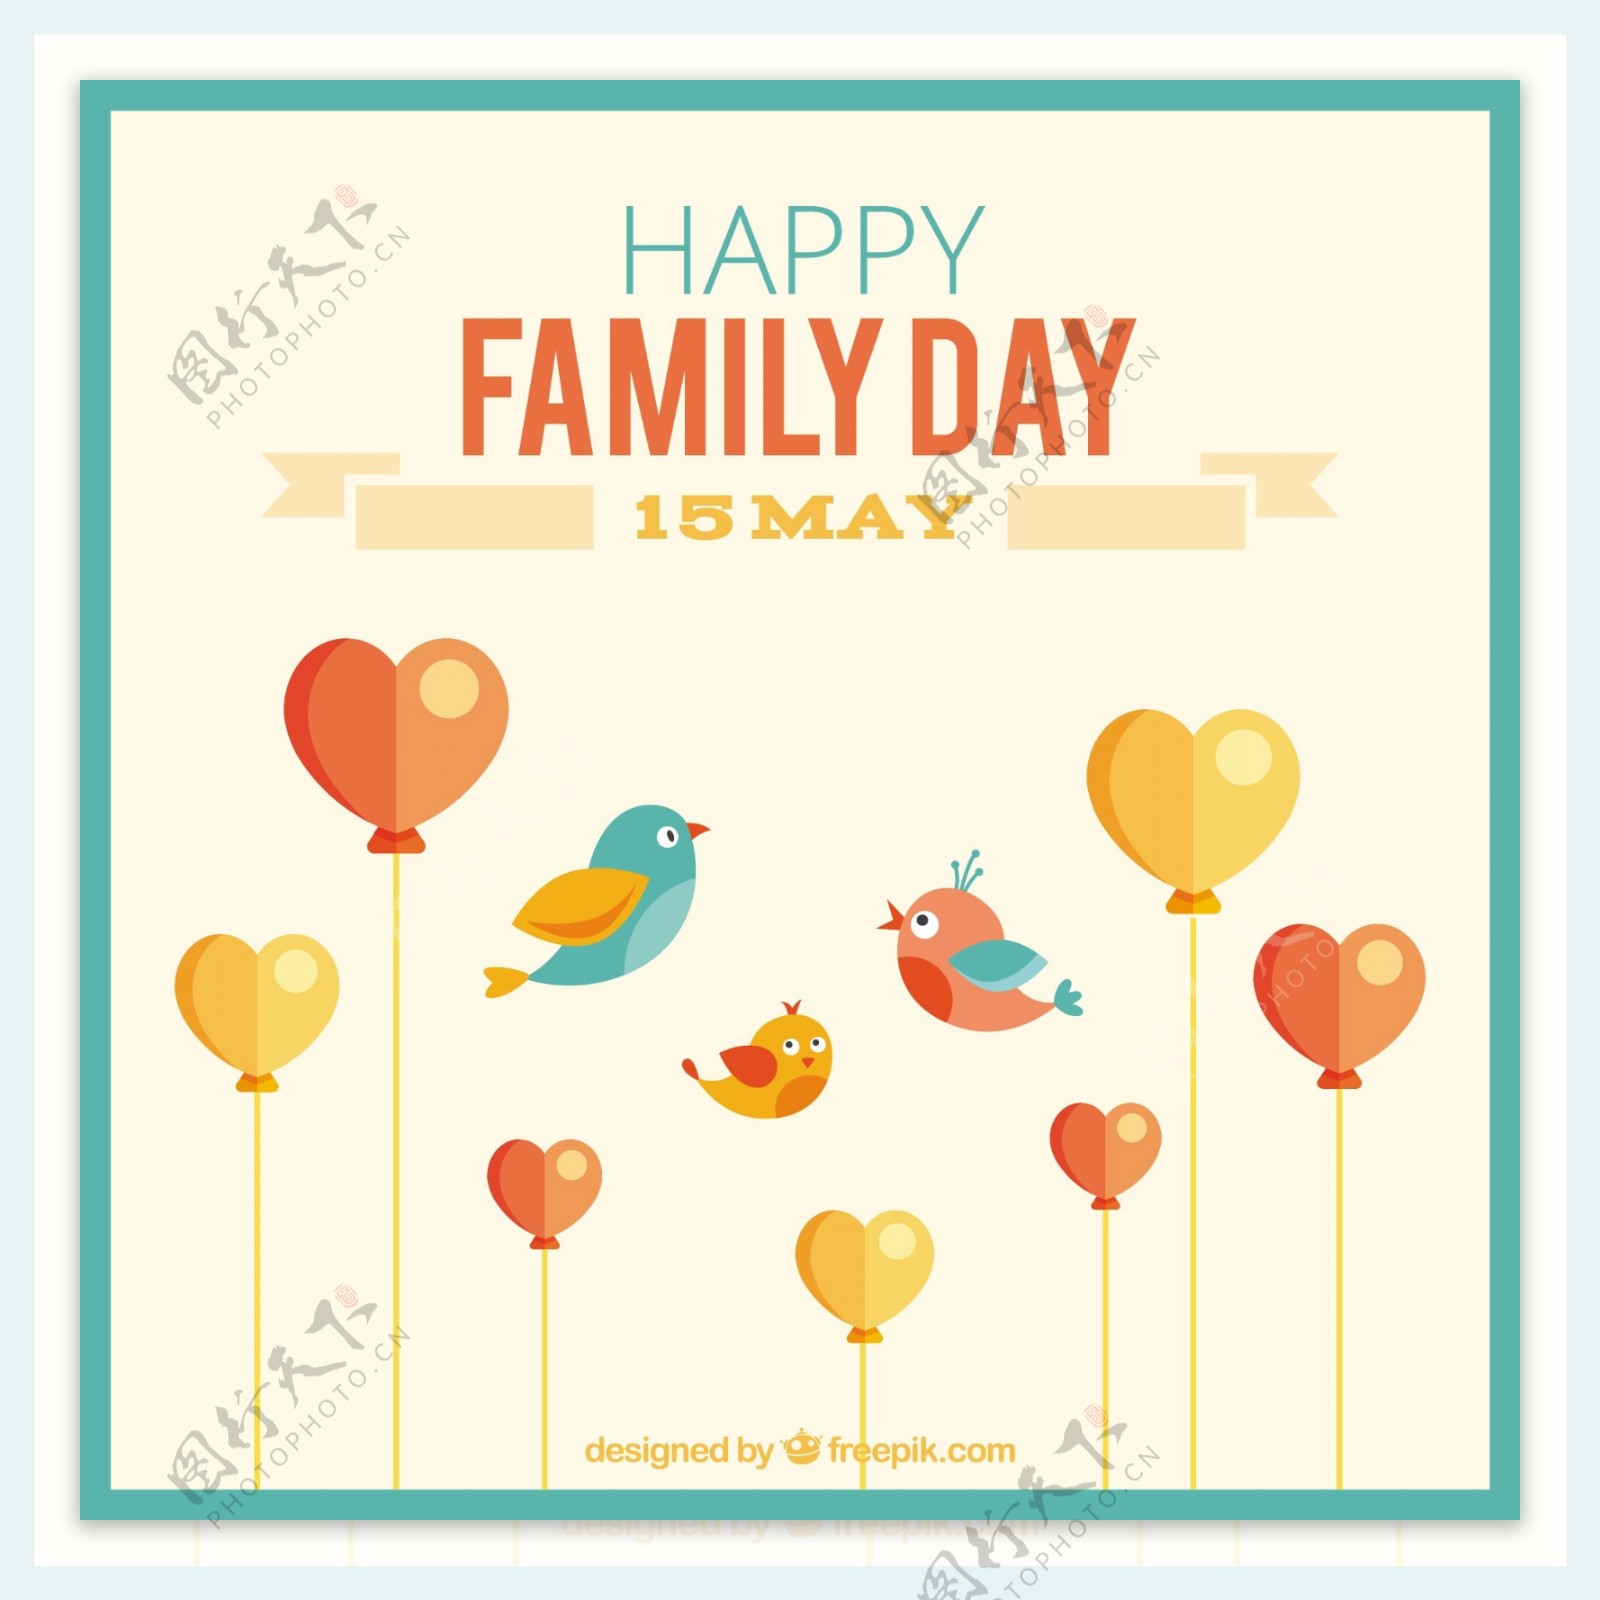 可爱的家庭日卡与鸟类和心脏形状的气球